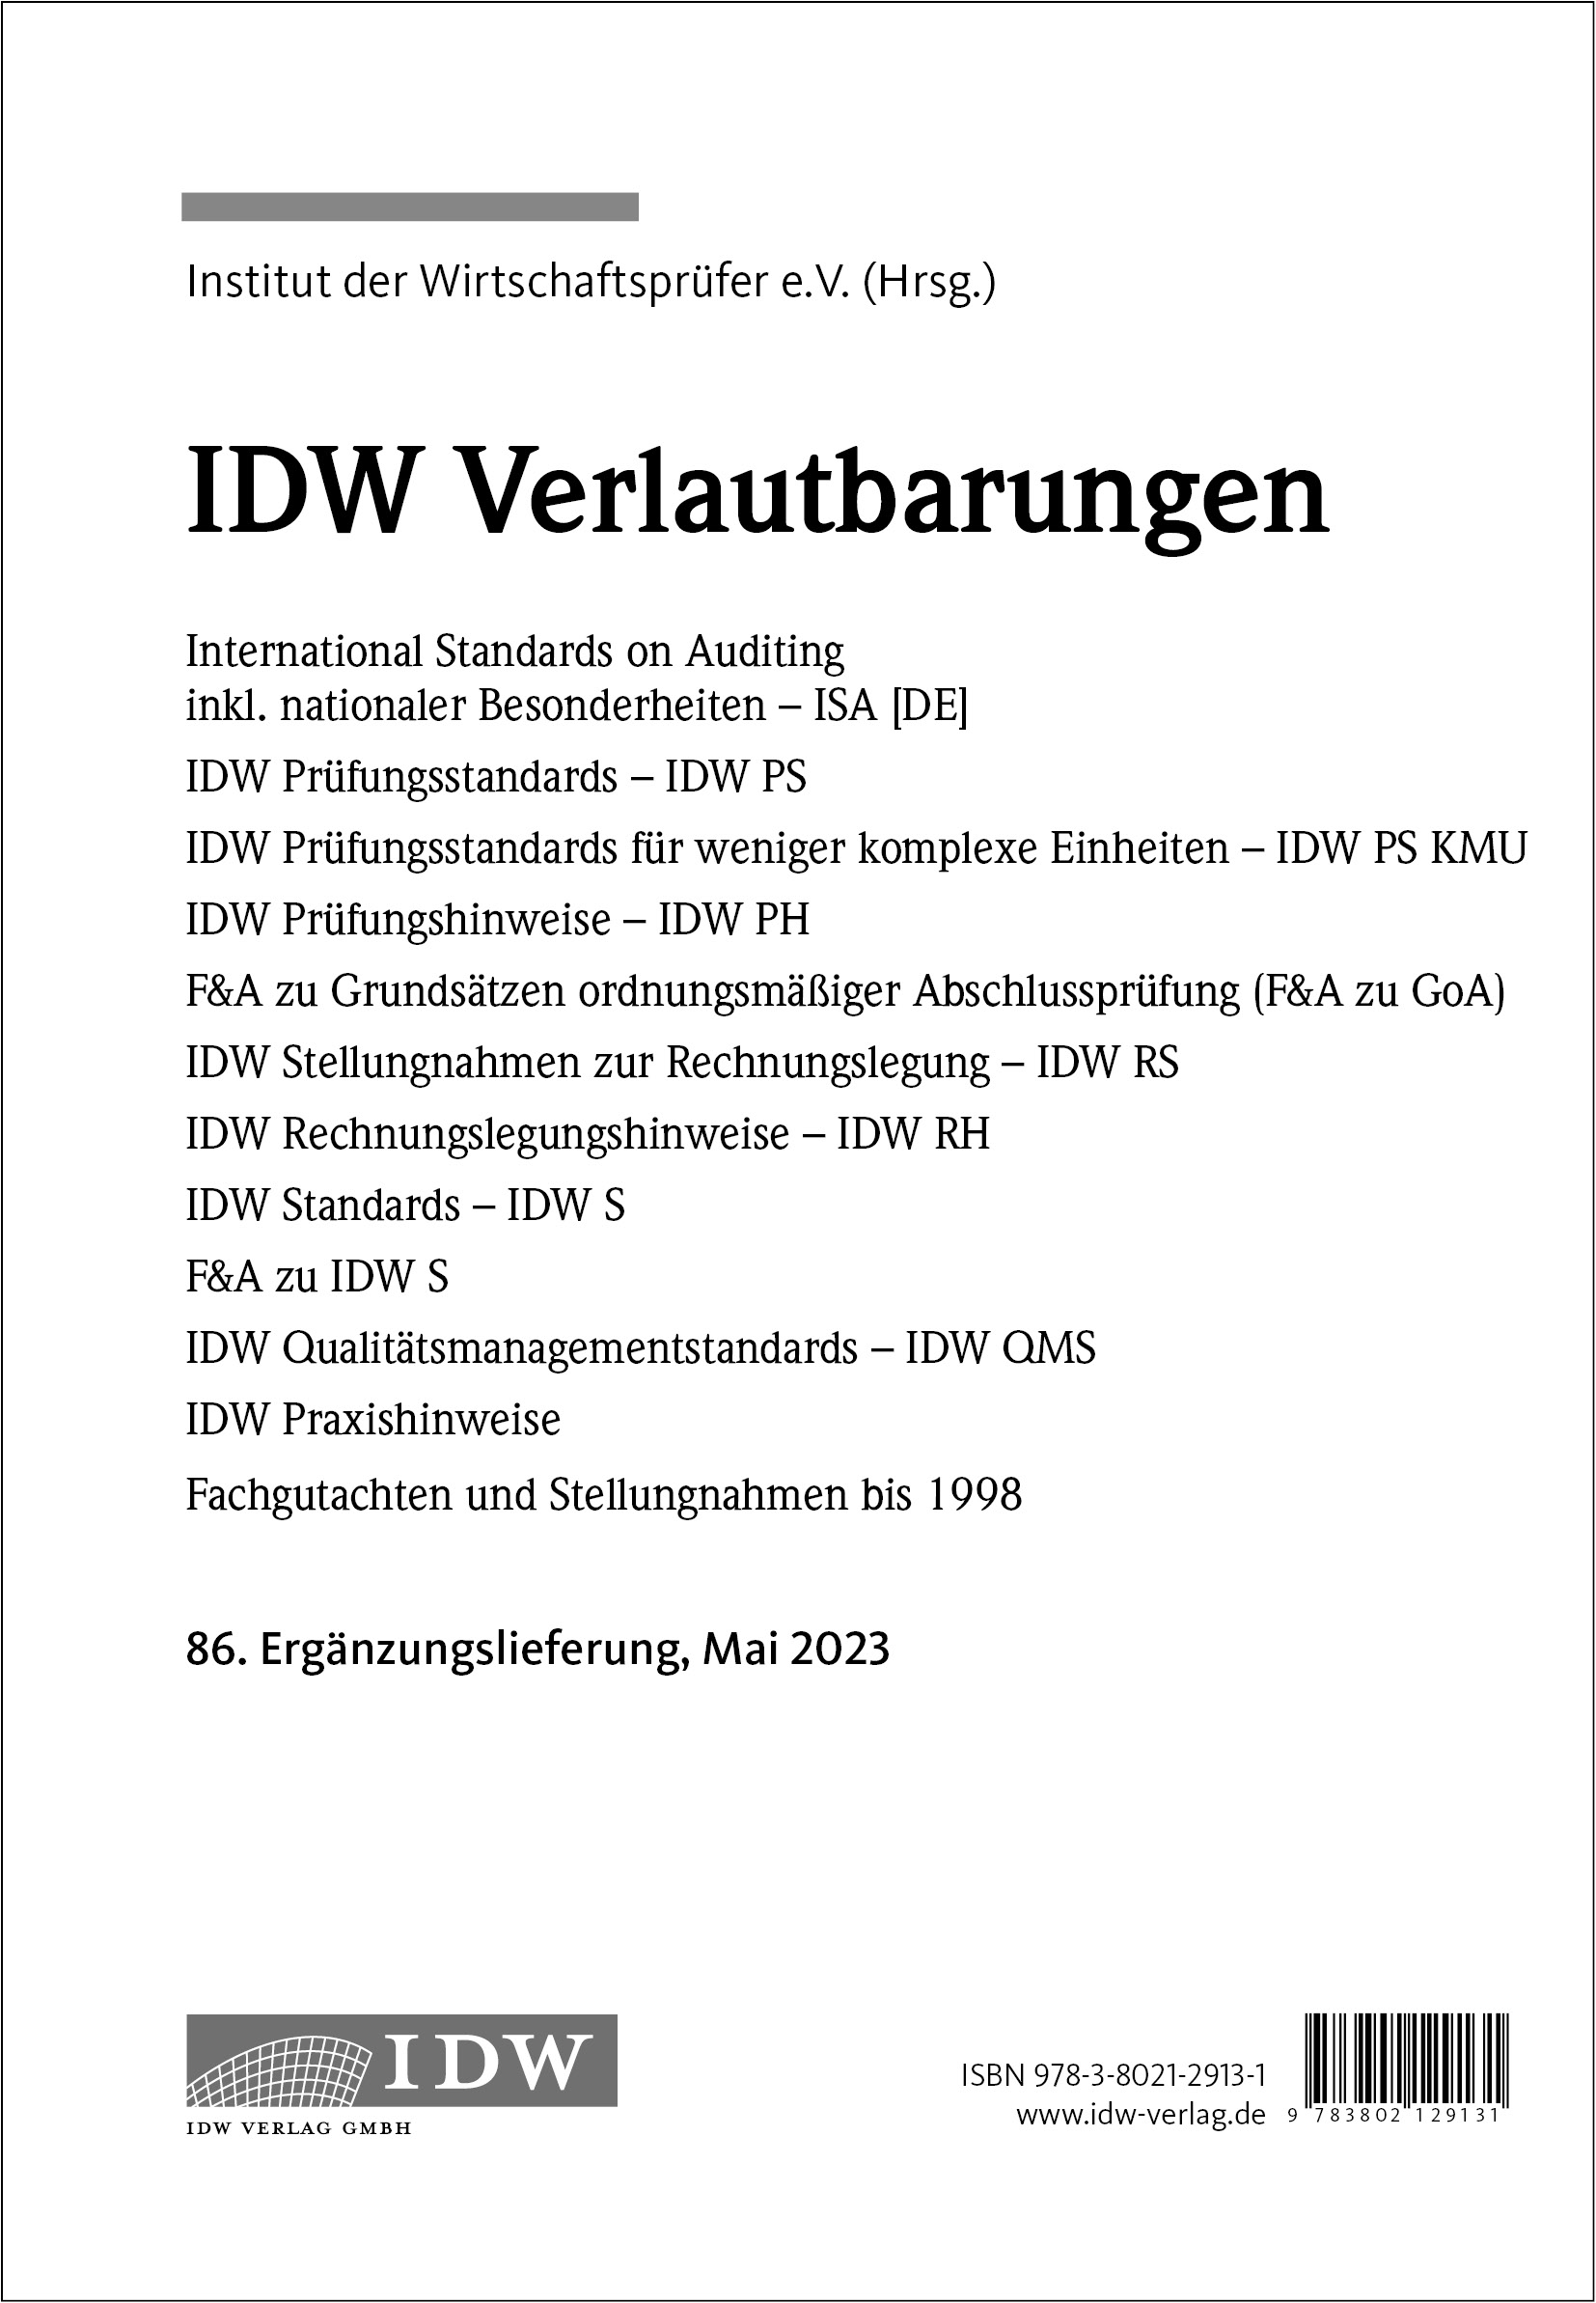 IDW Verlautbarungen - 86. Ergänzungslieferung, Mai 2023